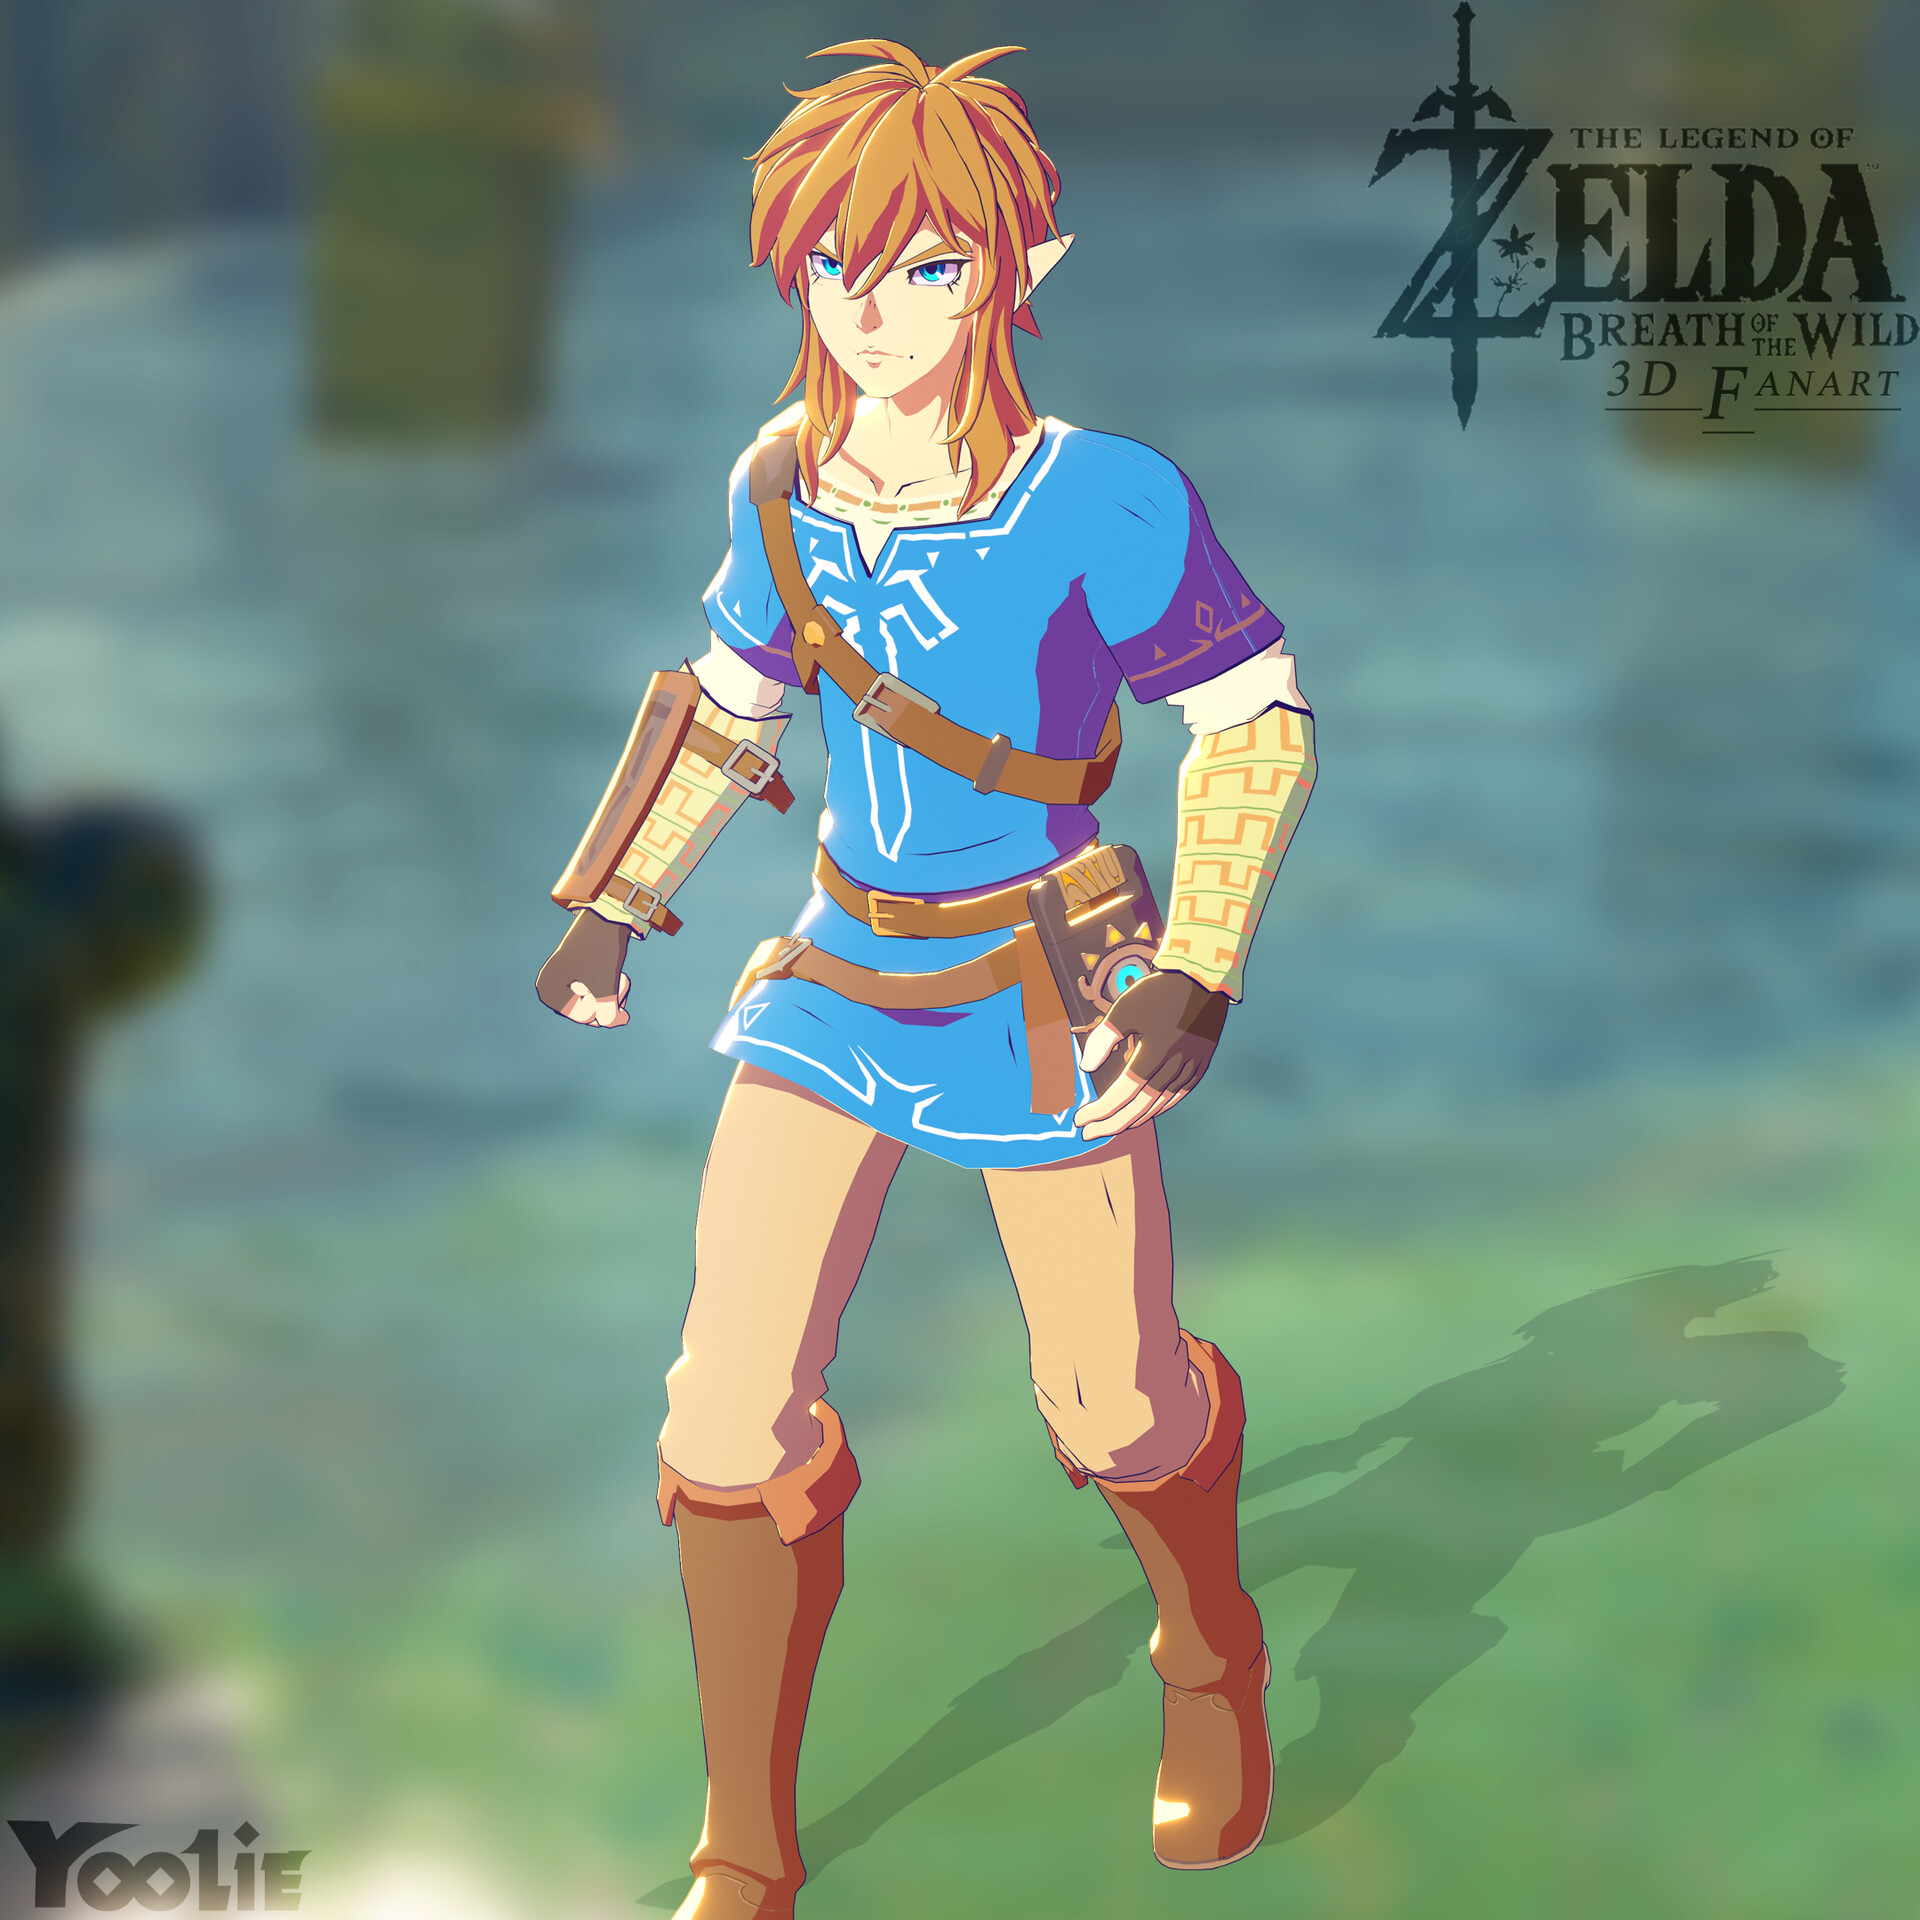 Legend of Zelda Breath of the Wild 3D Art